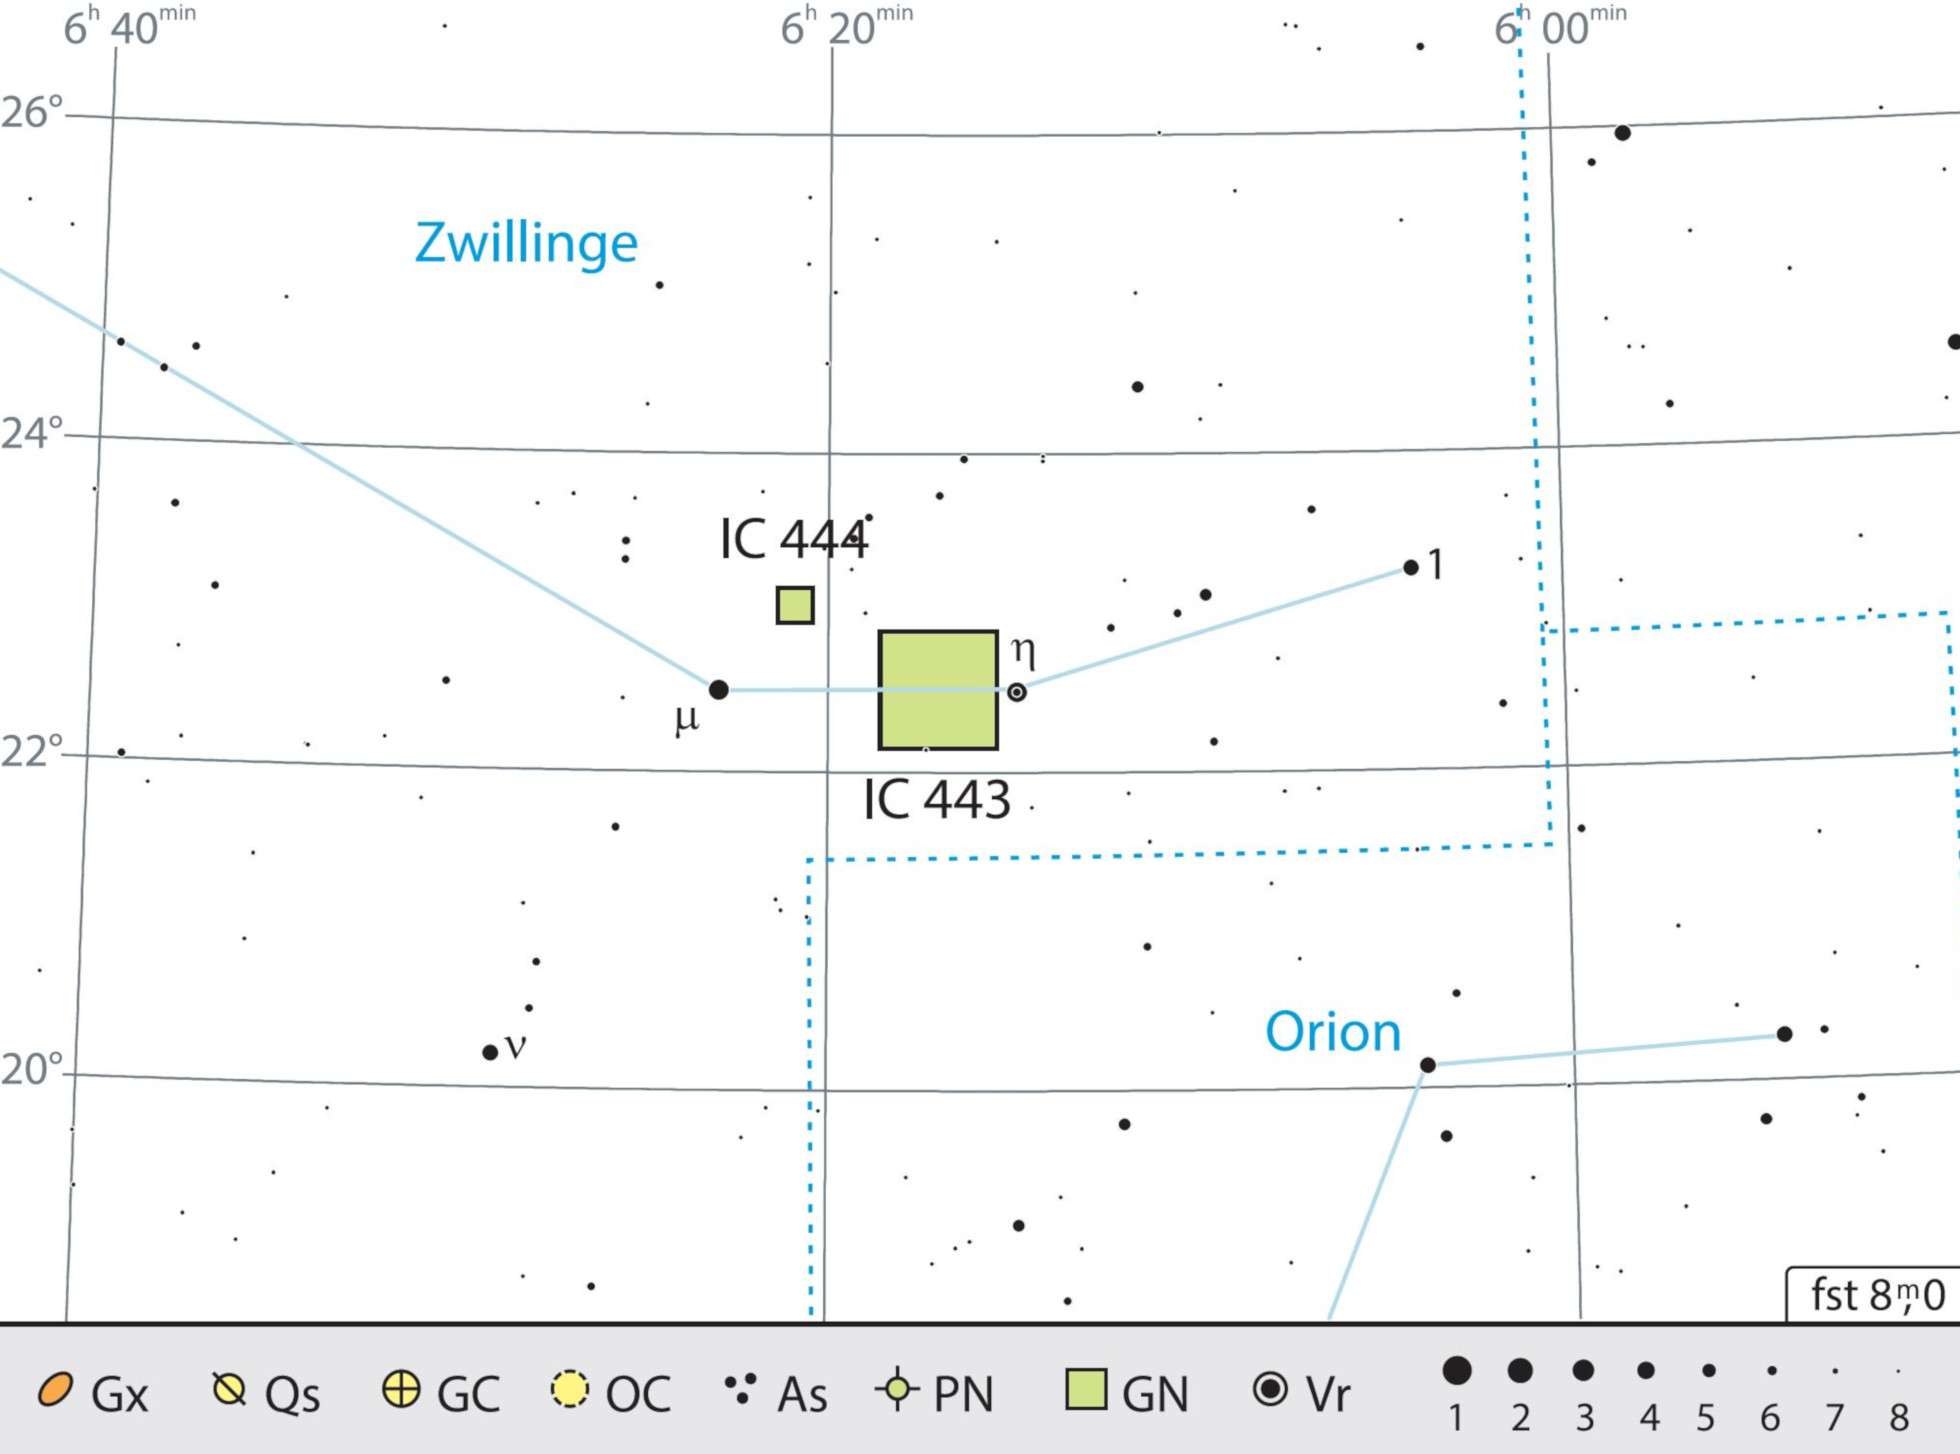 IC 443 jest łatwa do namierzenia pomiędzy gwiazdami μ i η w gwiazdozbiorze Bliźniąt. J. Scholten